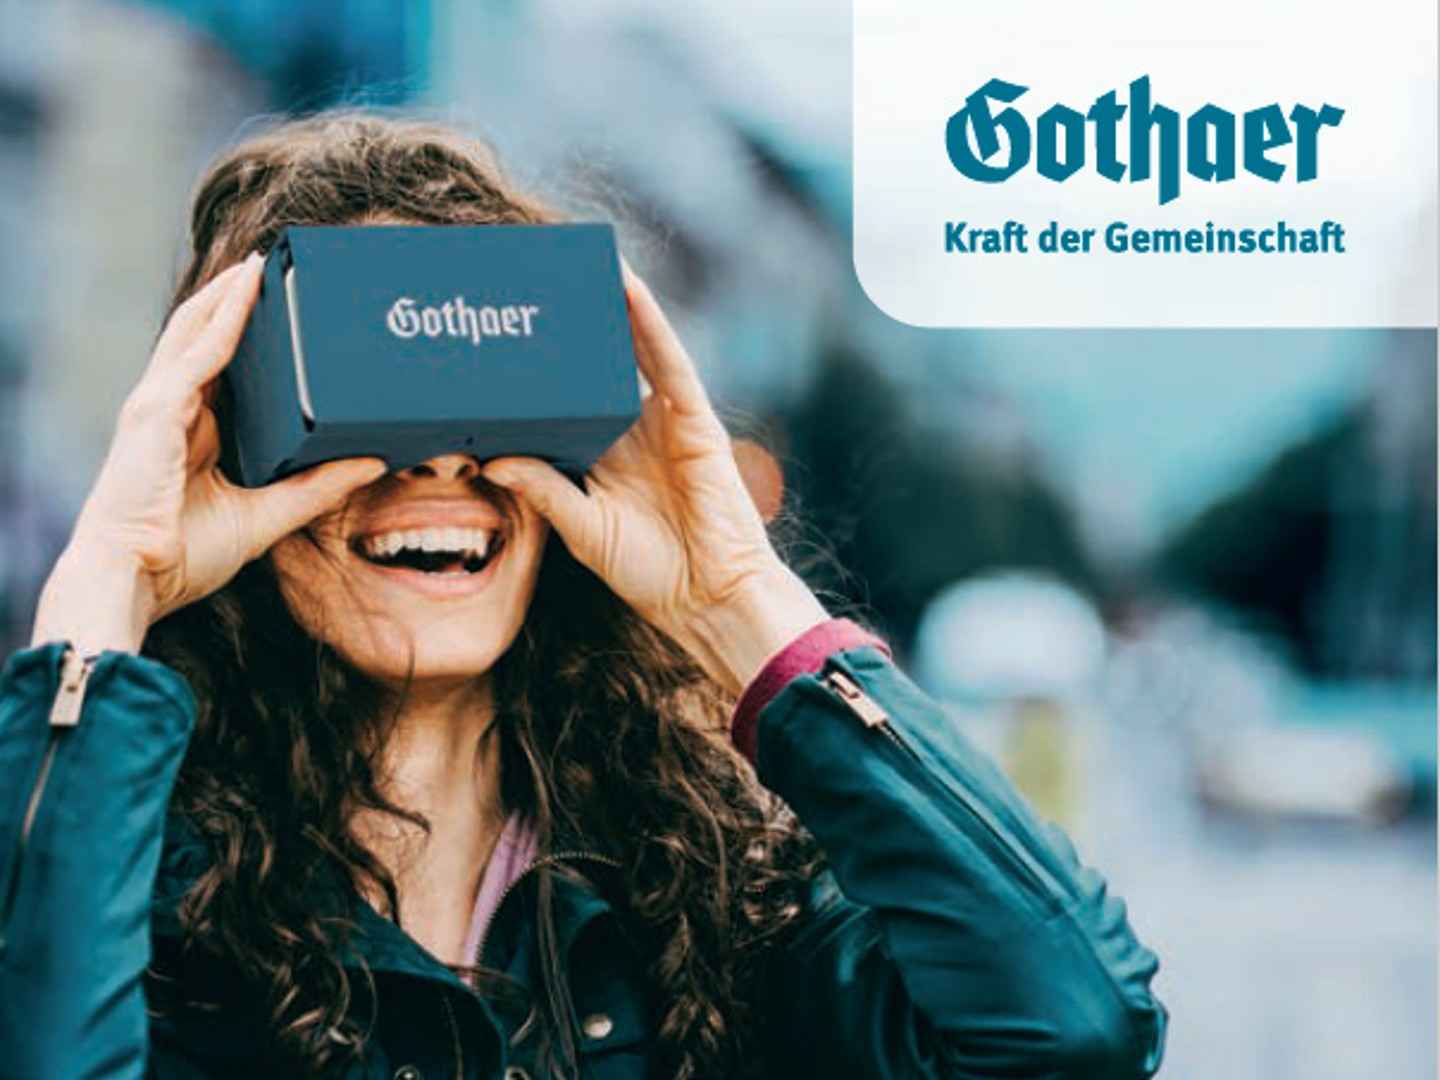 Gothaer Versicherung: VR-Brille